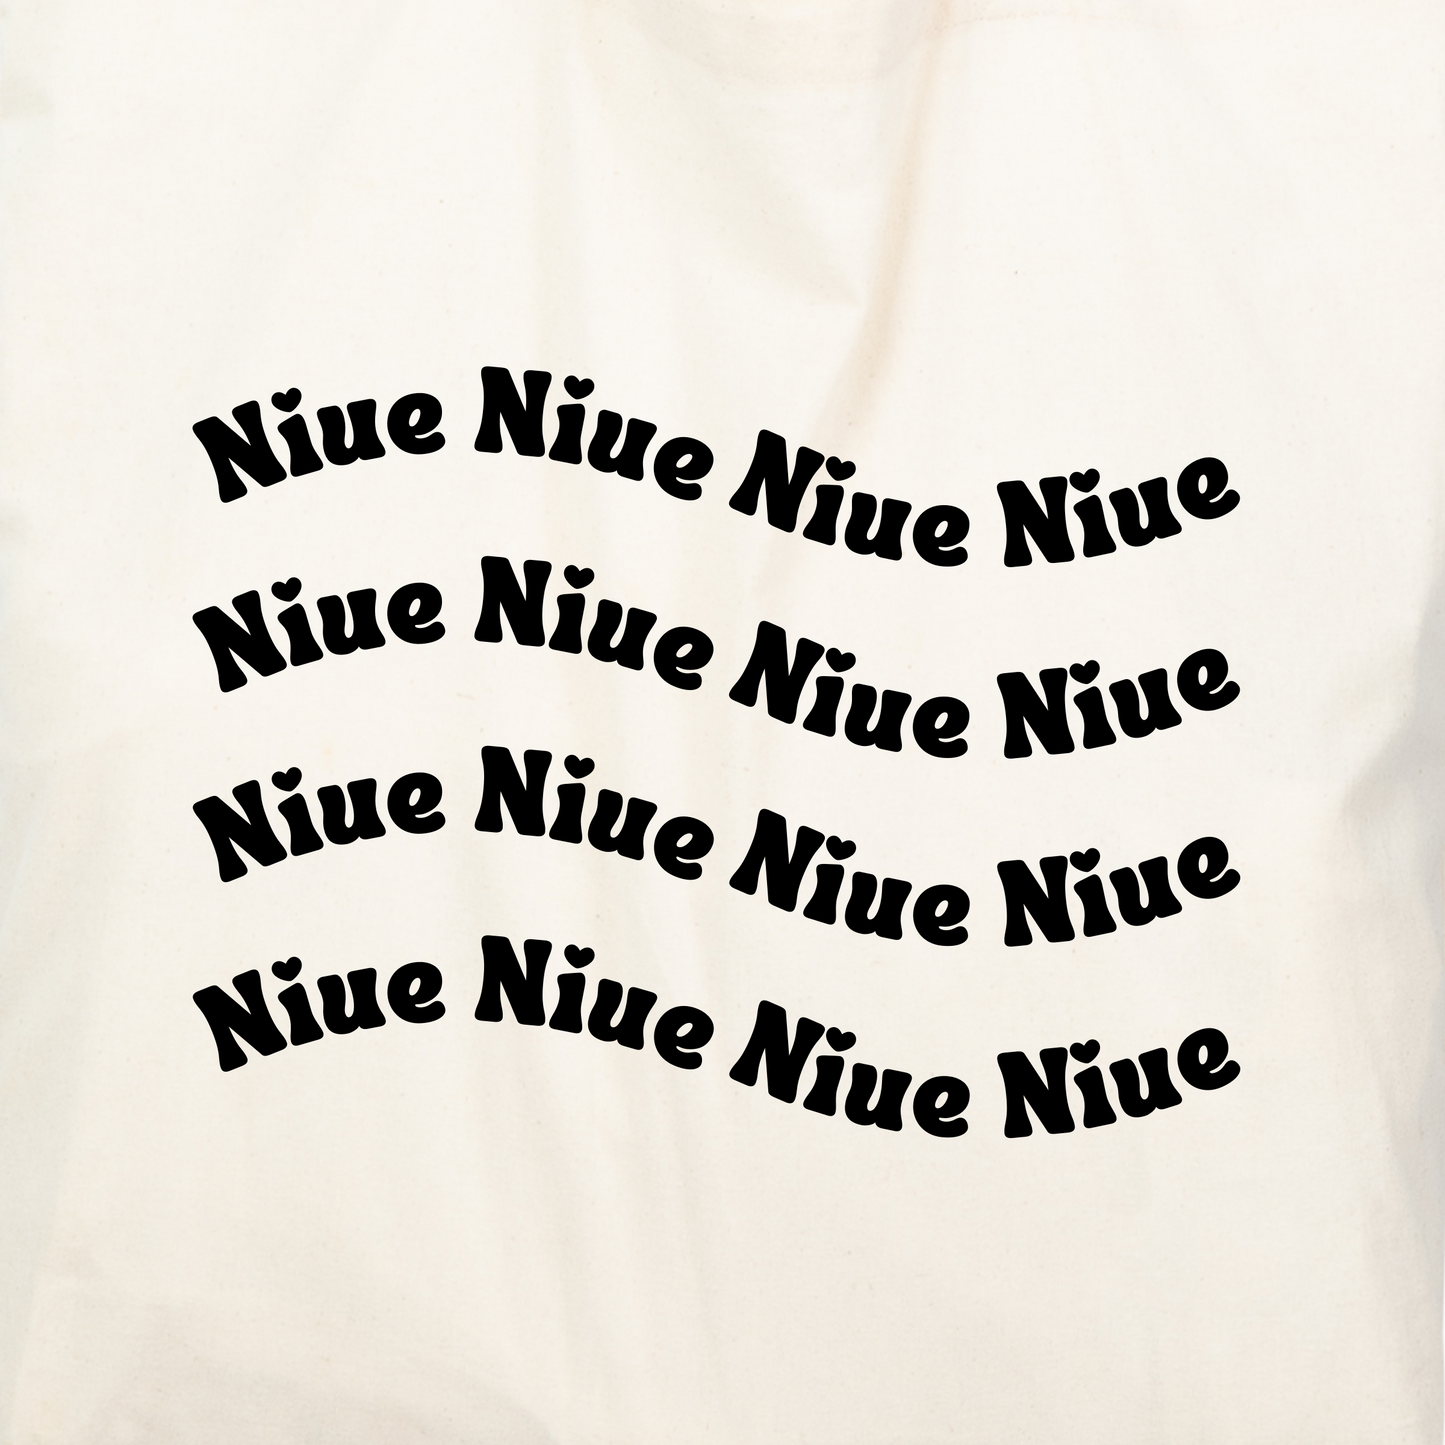 100% Cotton Tote Bag with Vinyl Designs - Niue. 38 cm x 42 cm Cotton Tote Bag.  Machine Washable.